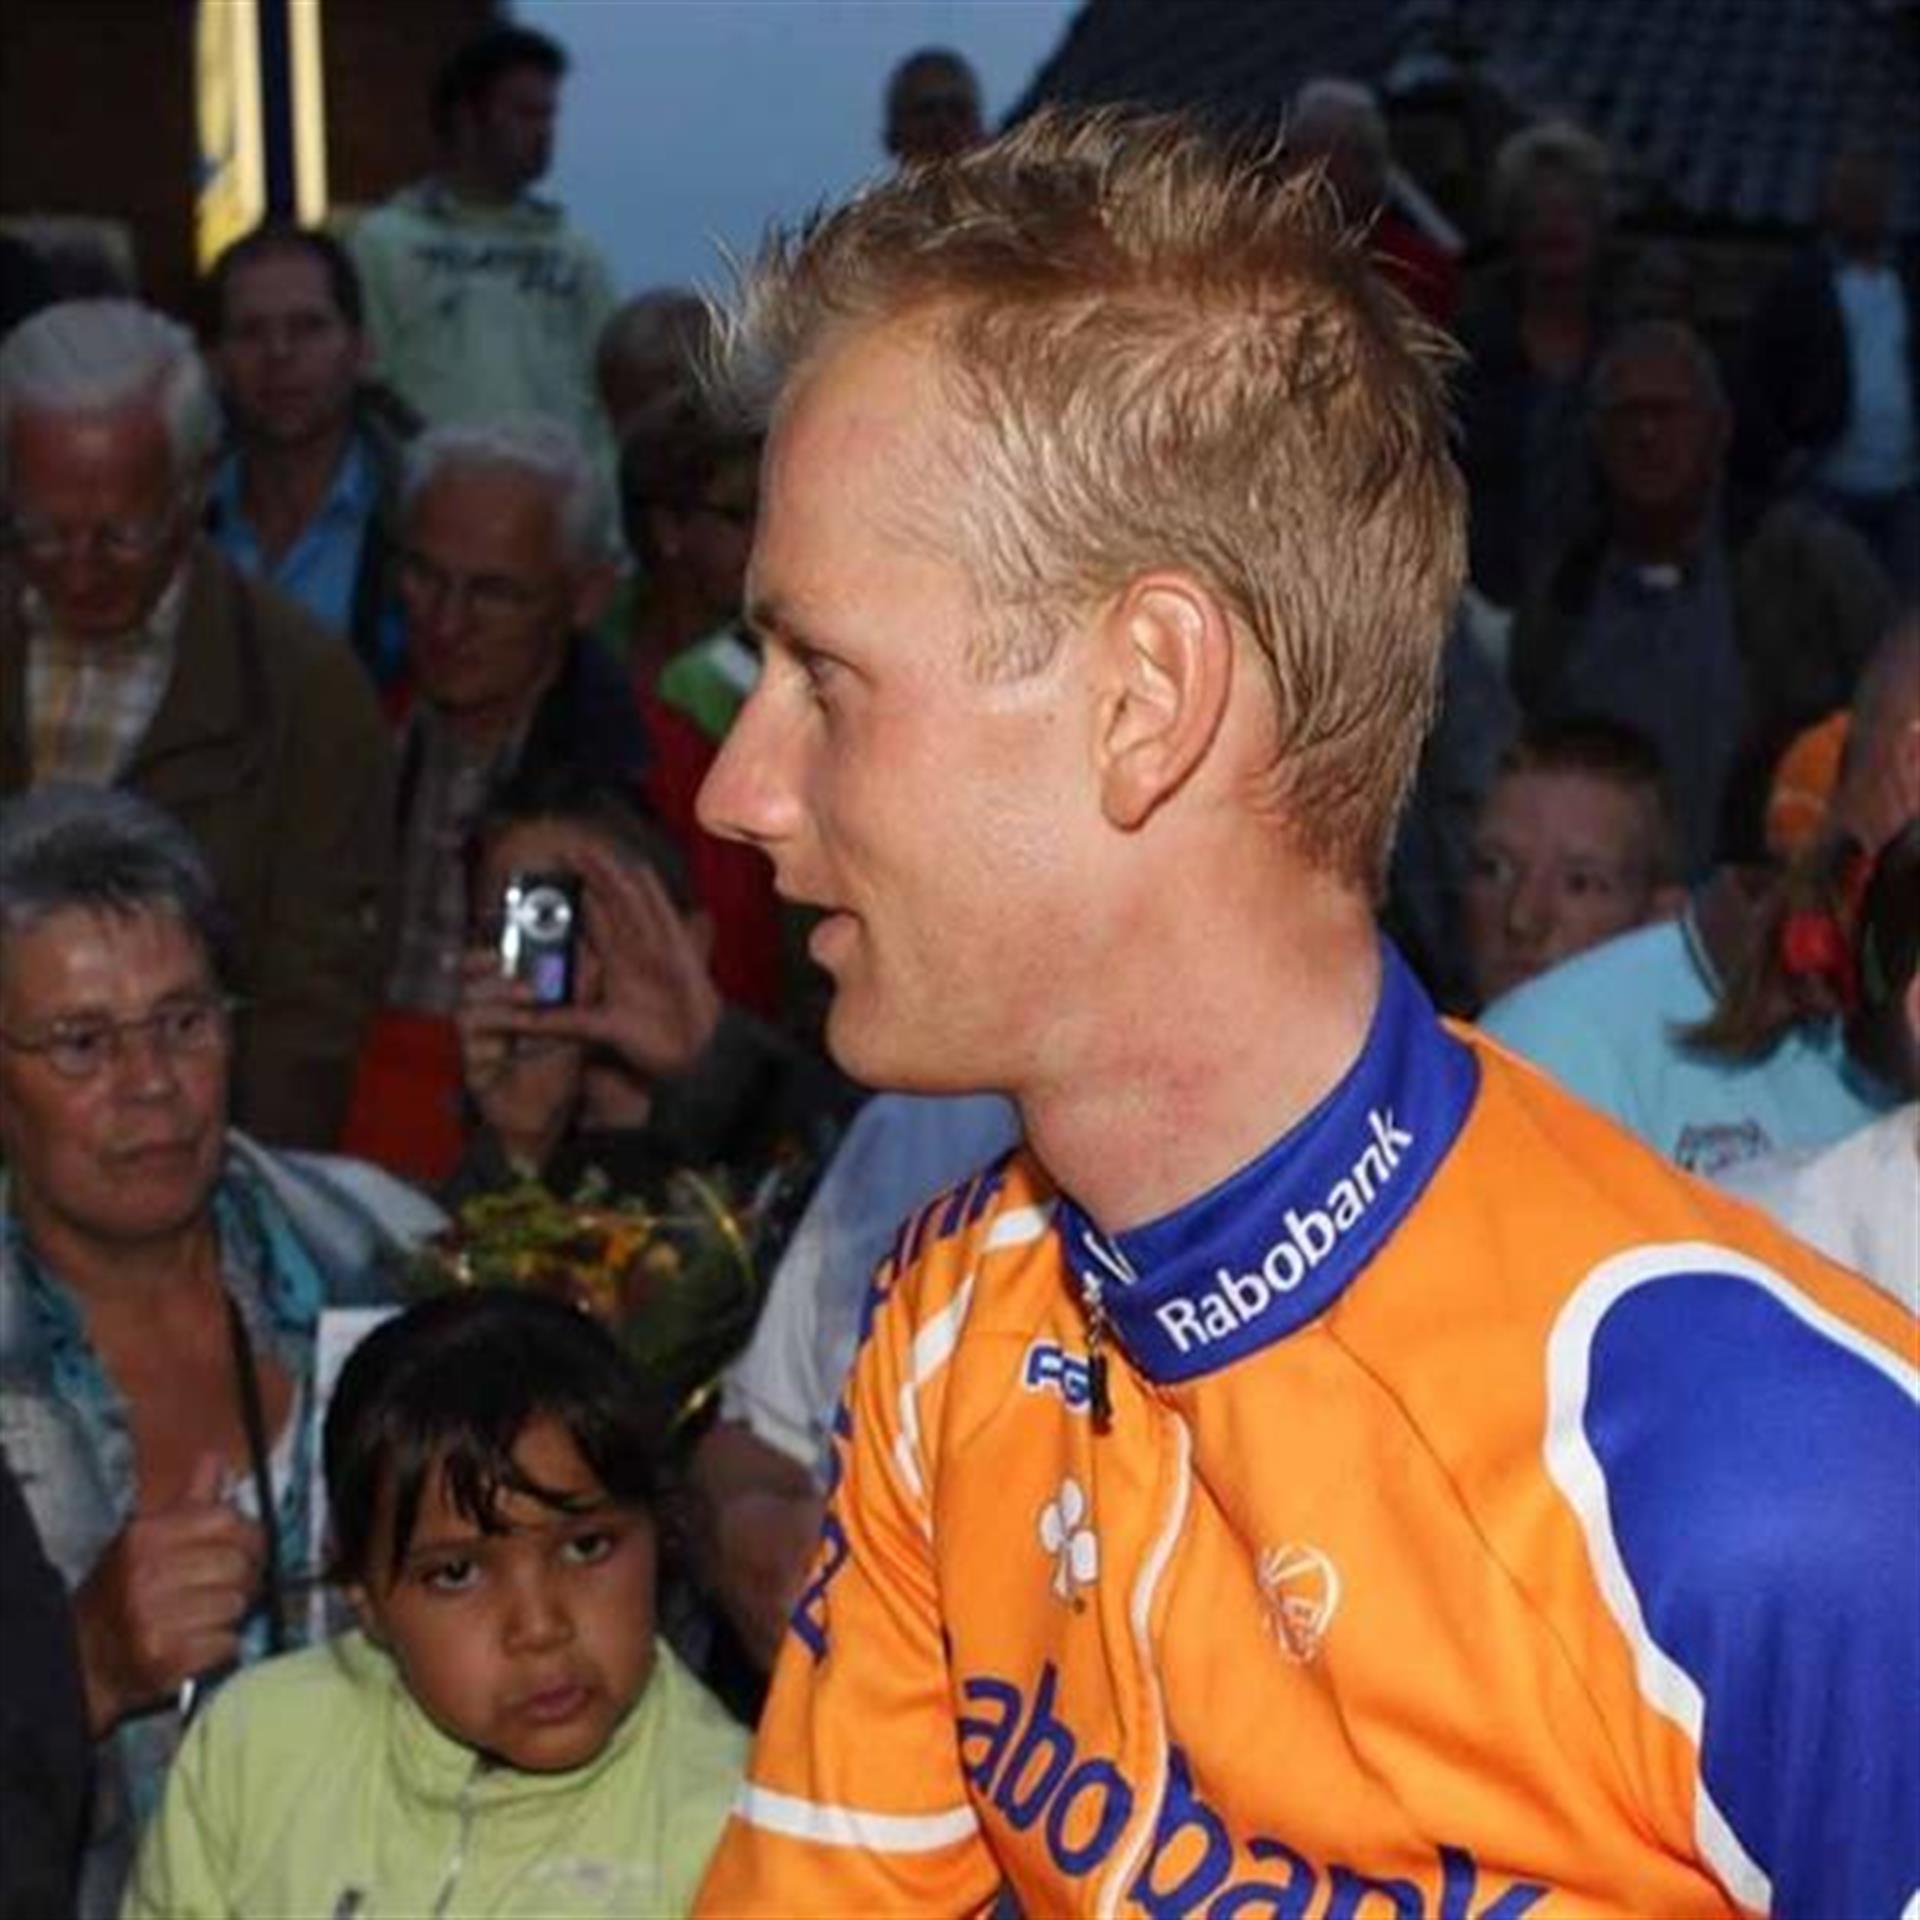 Pieter Weening won 10 jaar geleden zijn eerste etappe in de Giro